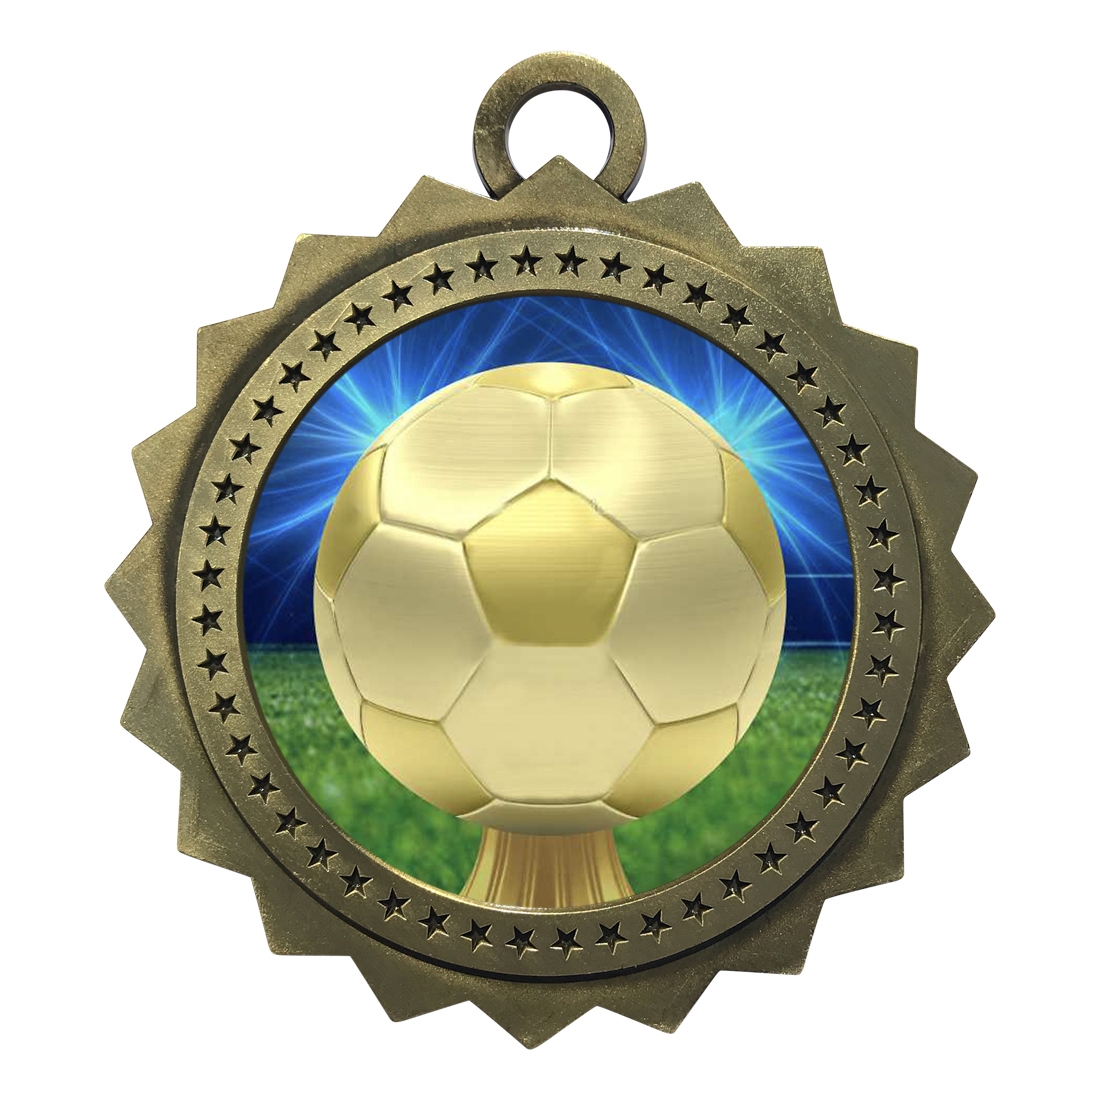 3" Soccer Medal